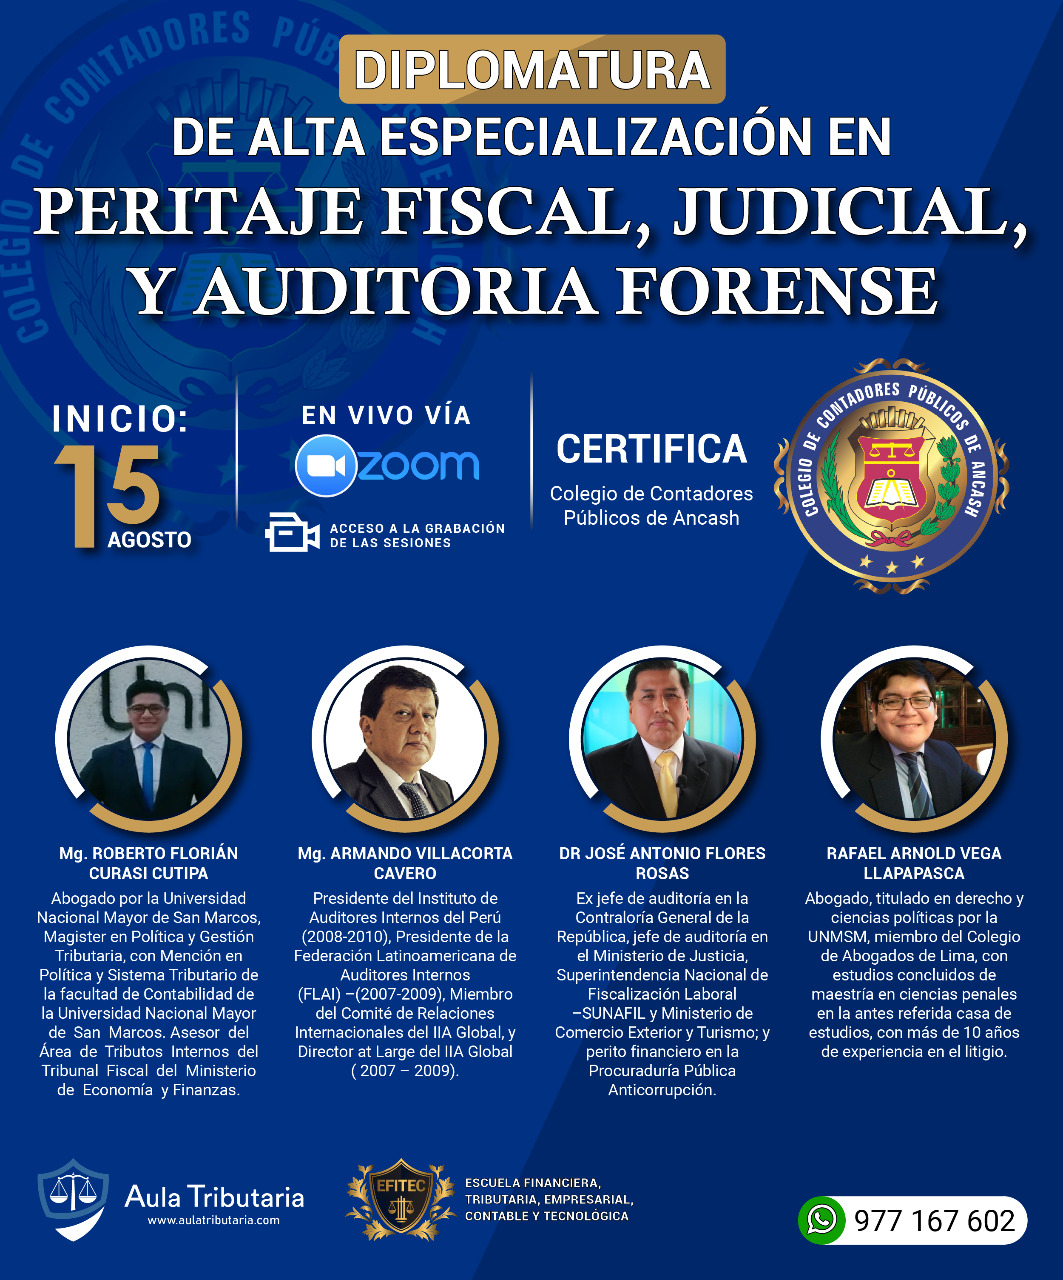 DIPLOMADO DE ALTA ESPECIALIZACIÓN EN PERITAJE FISCAL, JUDICIAL Y AUDITORÍA FORENSE